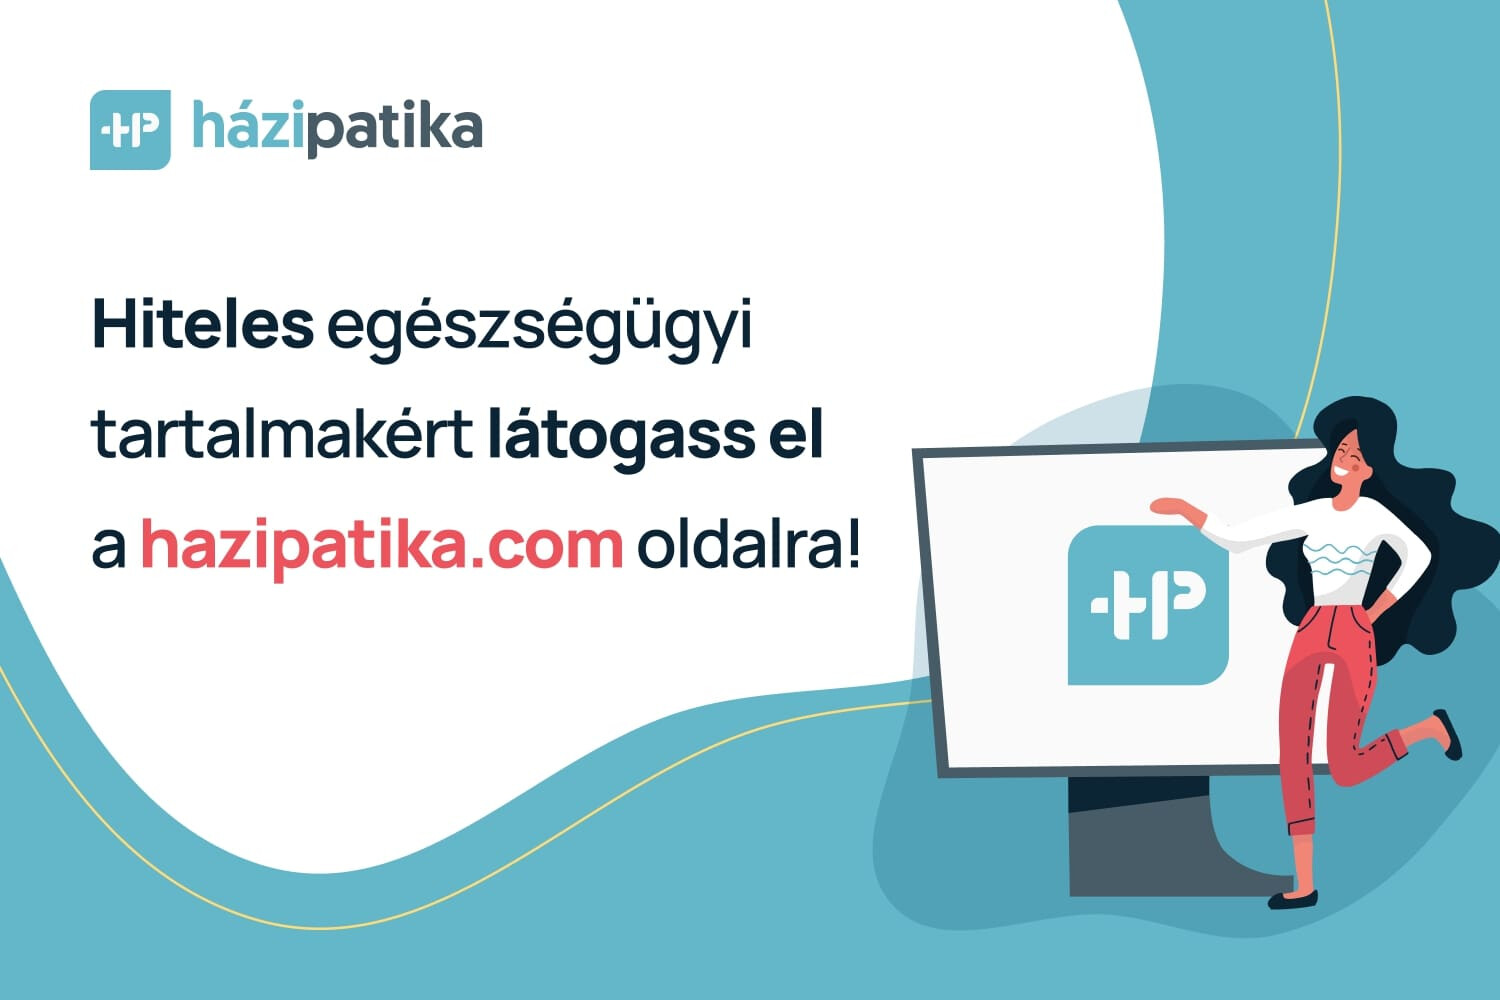 FĂĄjdalom ĂŠs gyulladĂĄscsĂśkkentĹk - Arany KĂ­gyĂł Patika - marketingpraktikak.hu - Online Patika